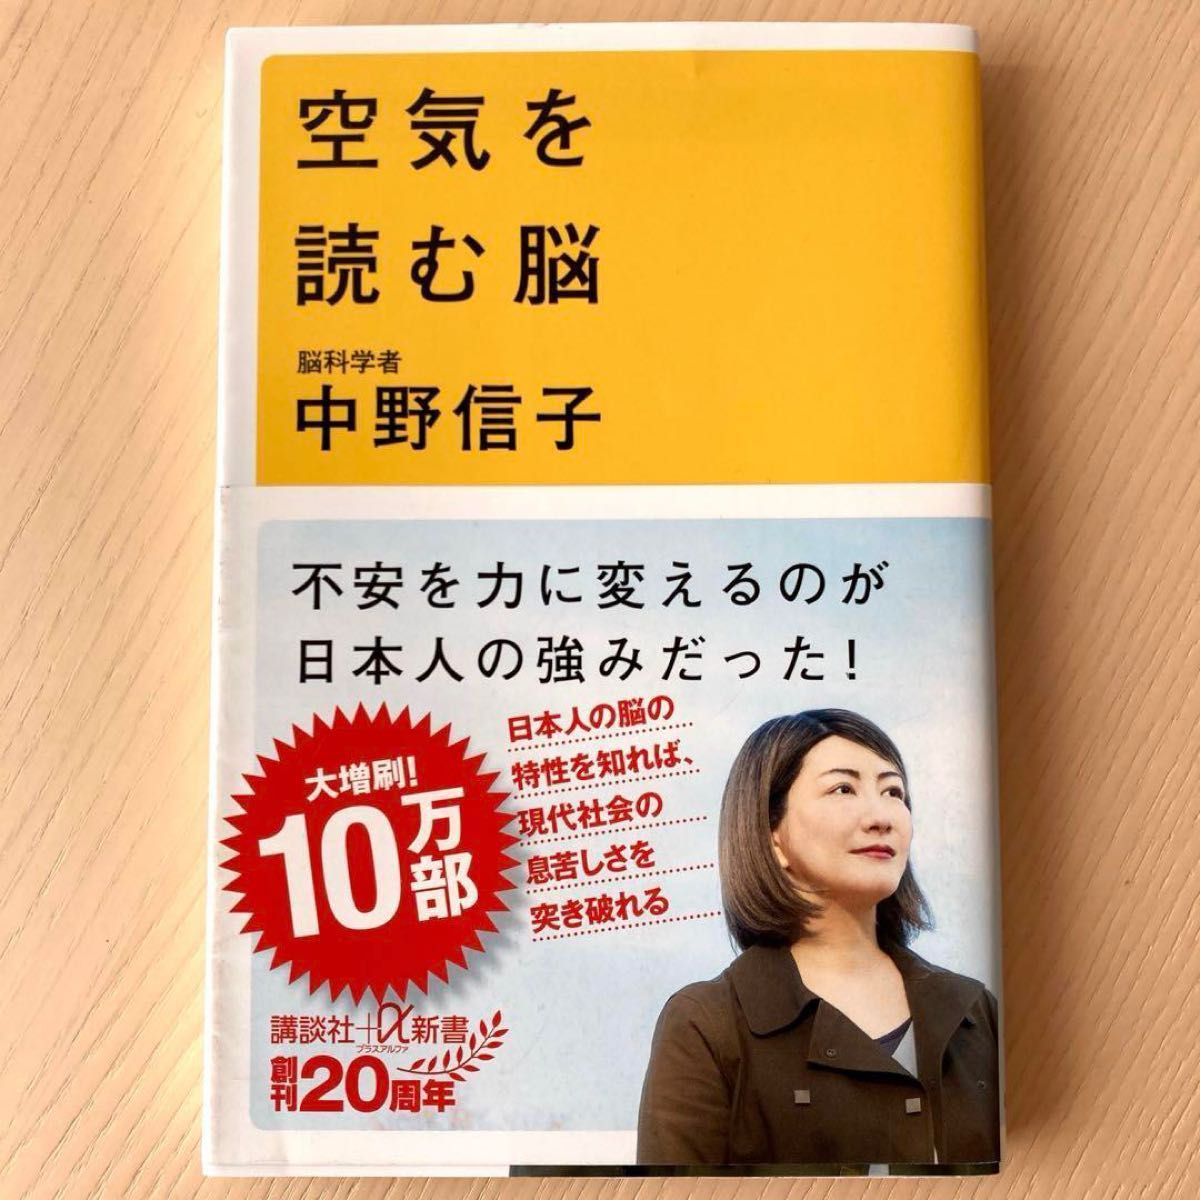 中野信子新書6冊「ペルソナ」「毒親 」「空気を読む脳」「サイコパス」「正しい恨みの晴らし方」「脳はどこまでコントロールできるか?」